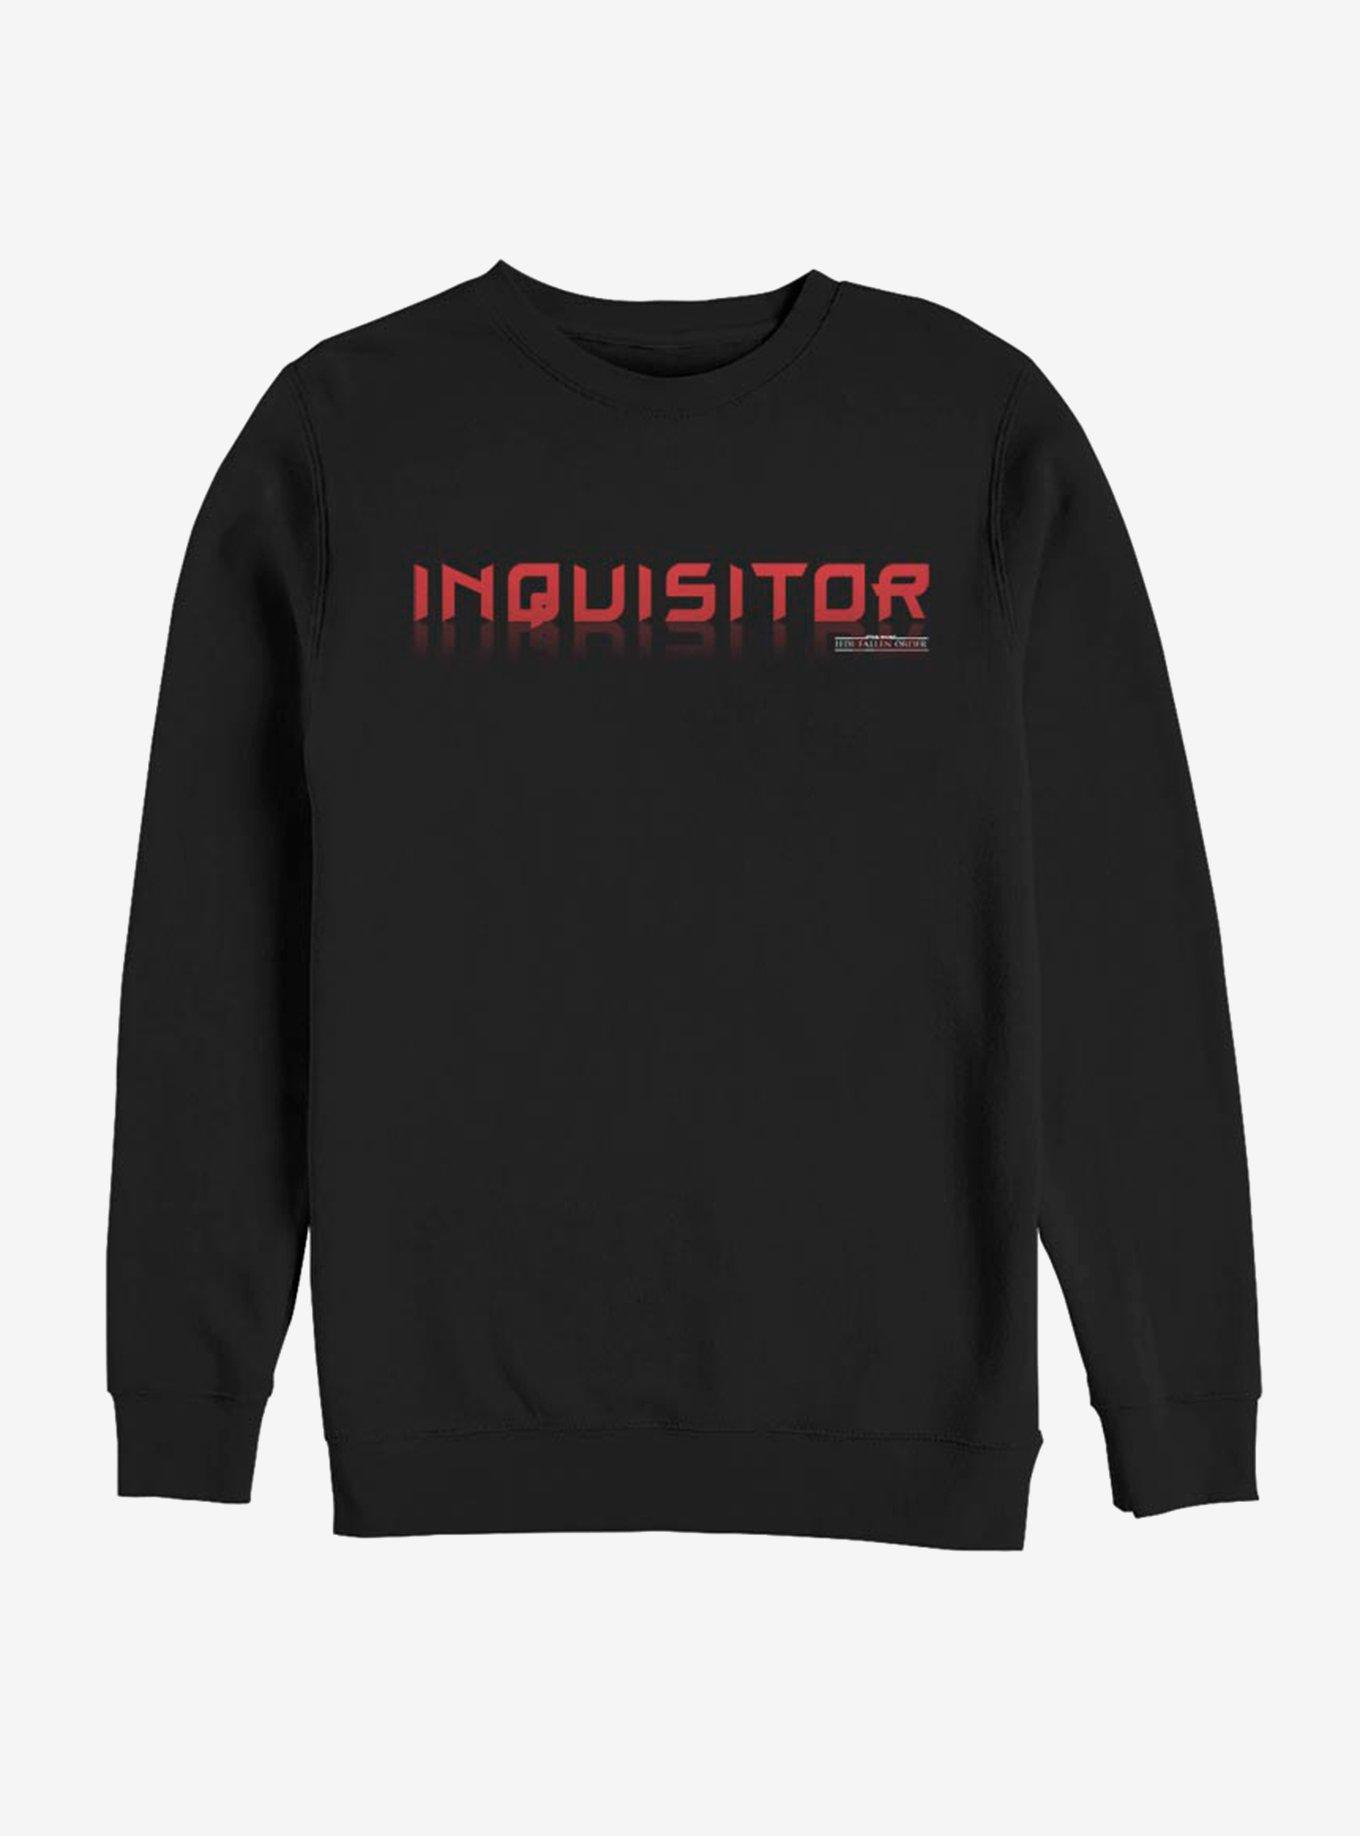 Star Wars Jedi: Fallen Order Inquisitor Wars Sweatshirt, BLACK, hi-res